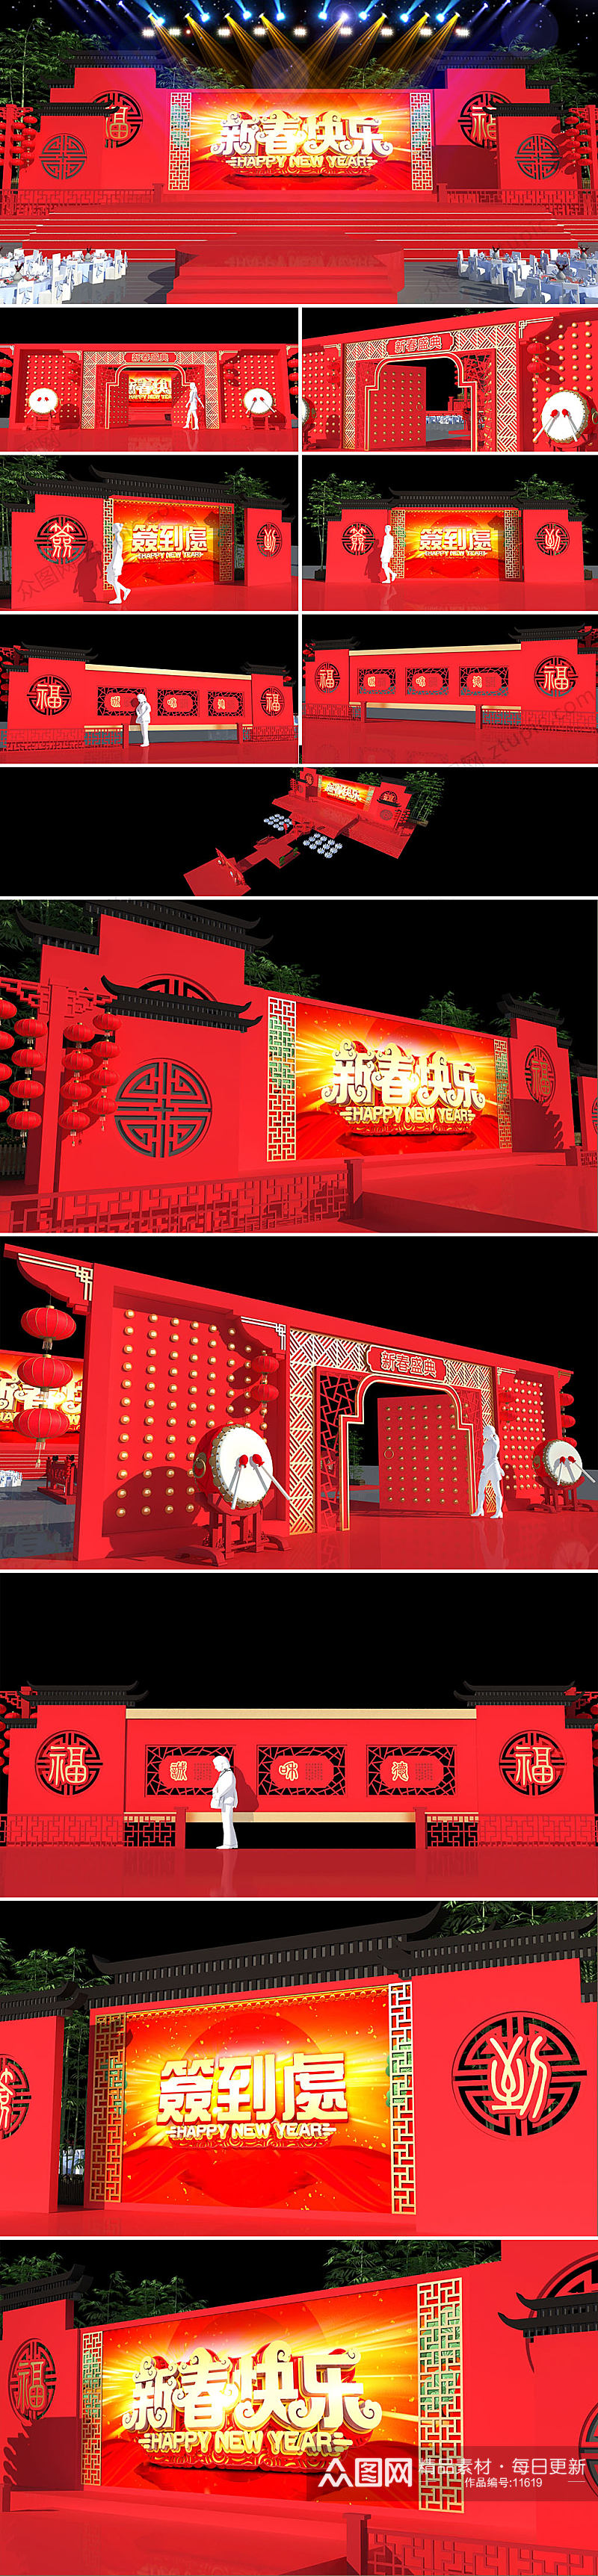 中式古典城门舞美舞台设计年会背景布置 年会美陈素材